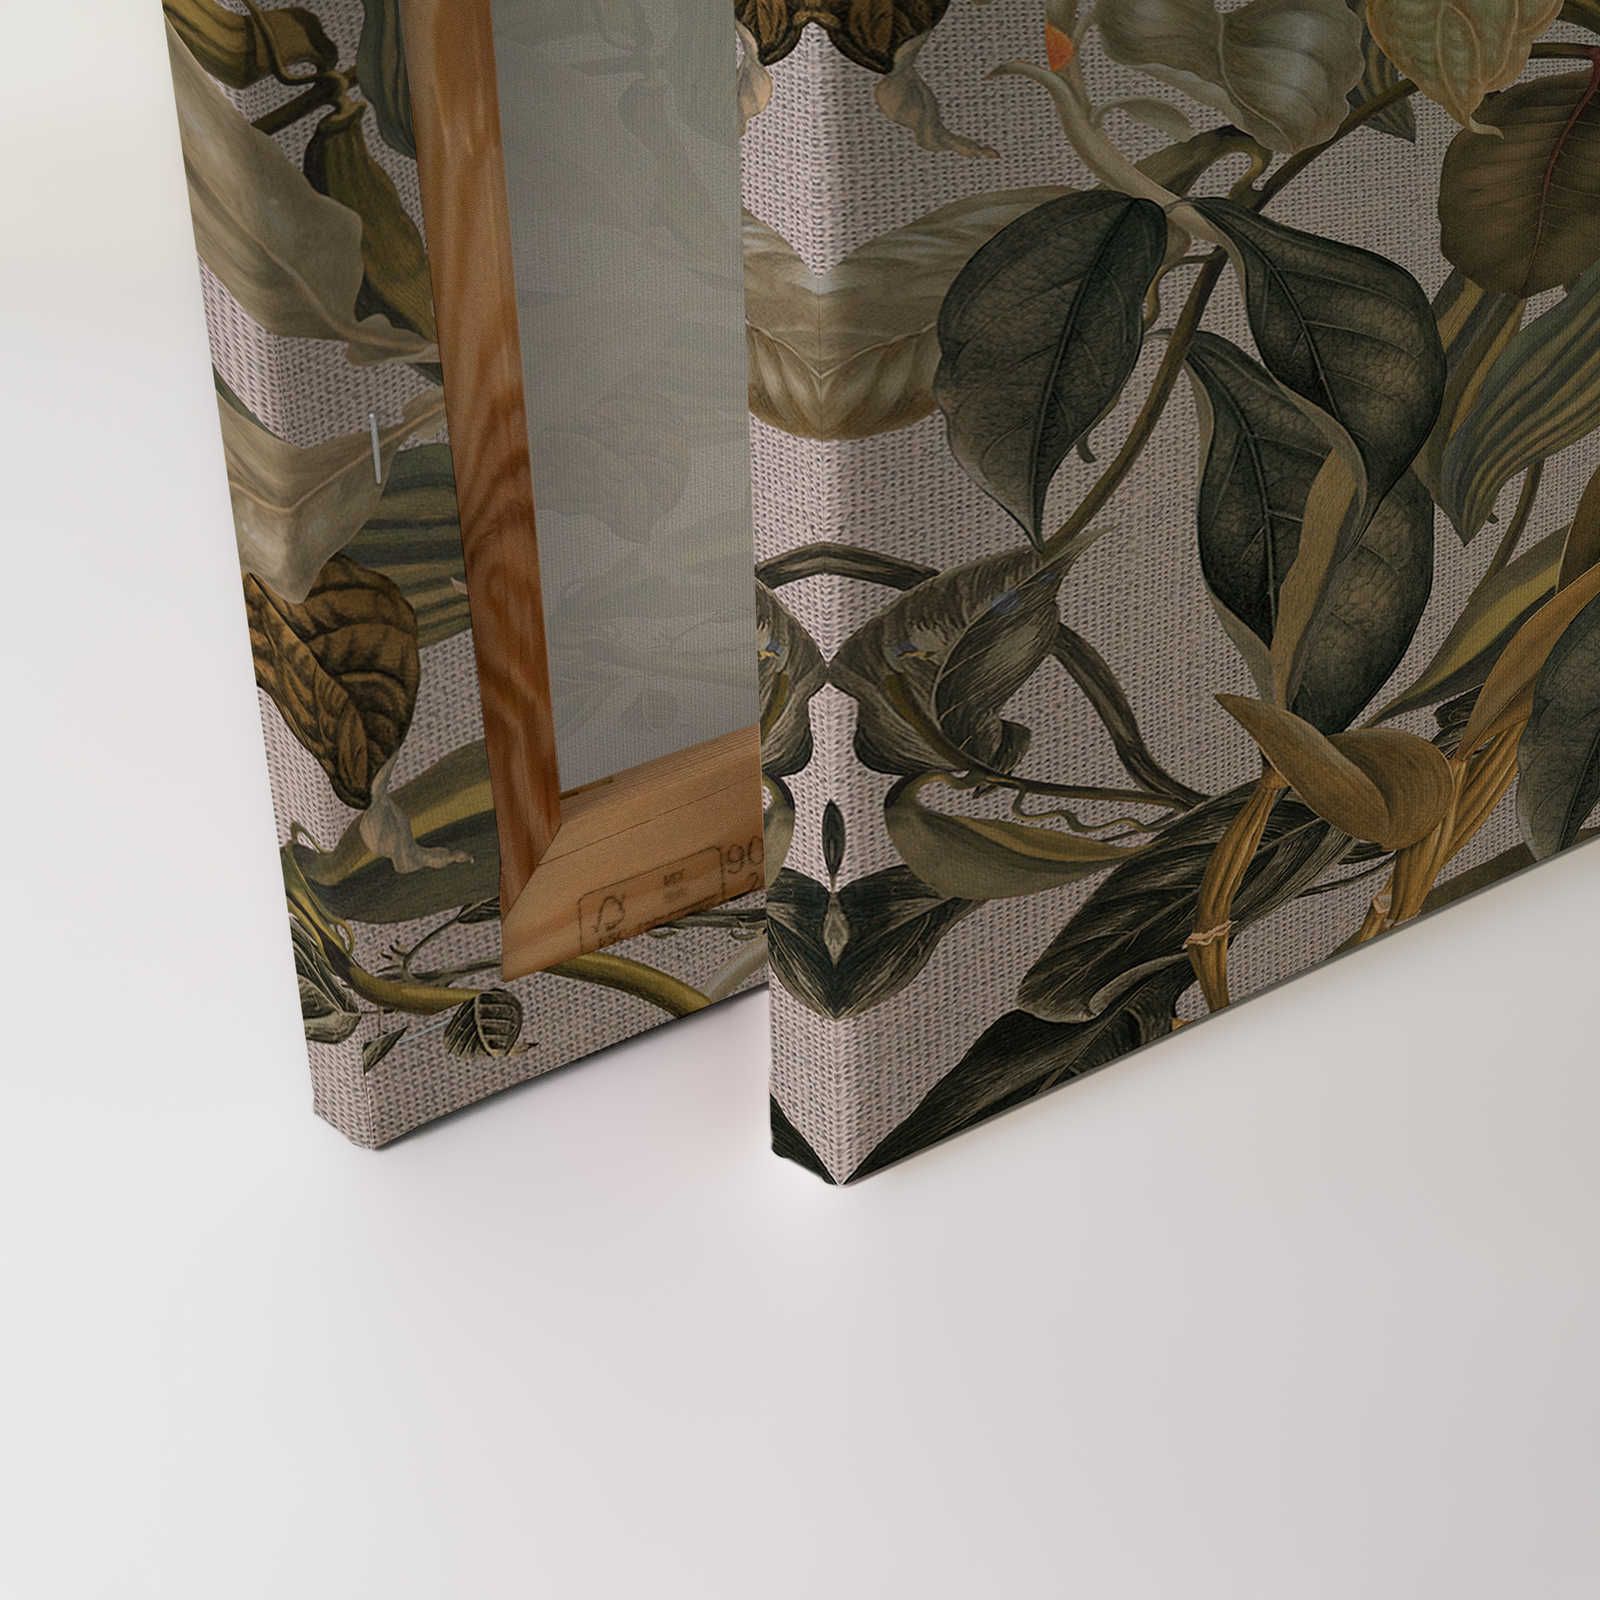             Tableau toile style botanique fleurs, feuilles & look textile - 0,90 m x 0,60 m
        